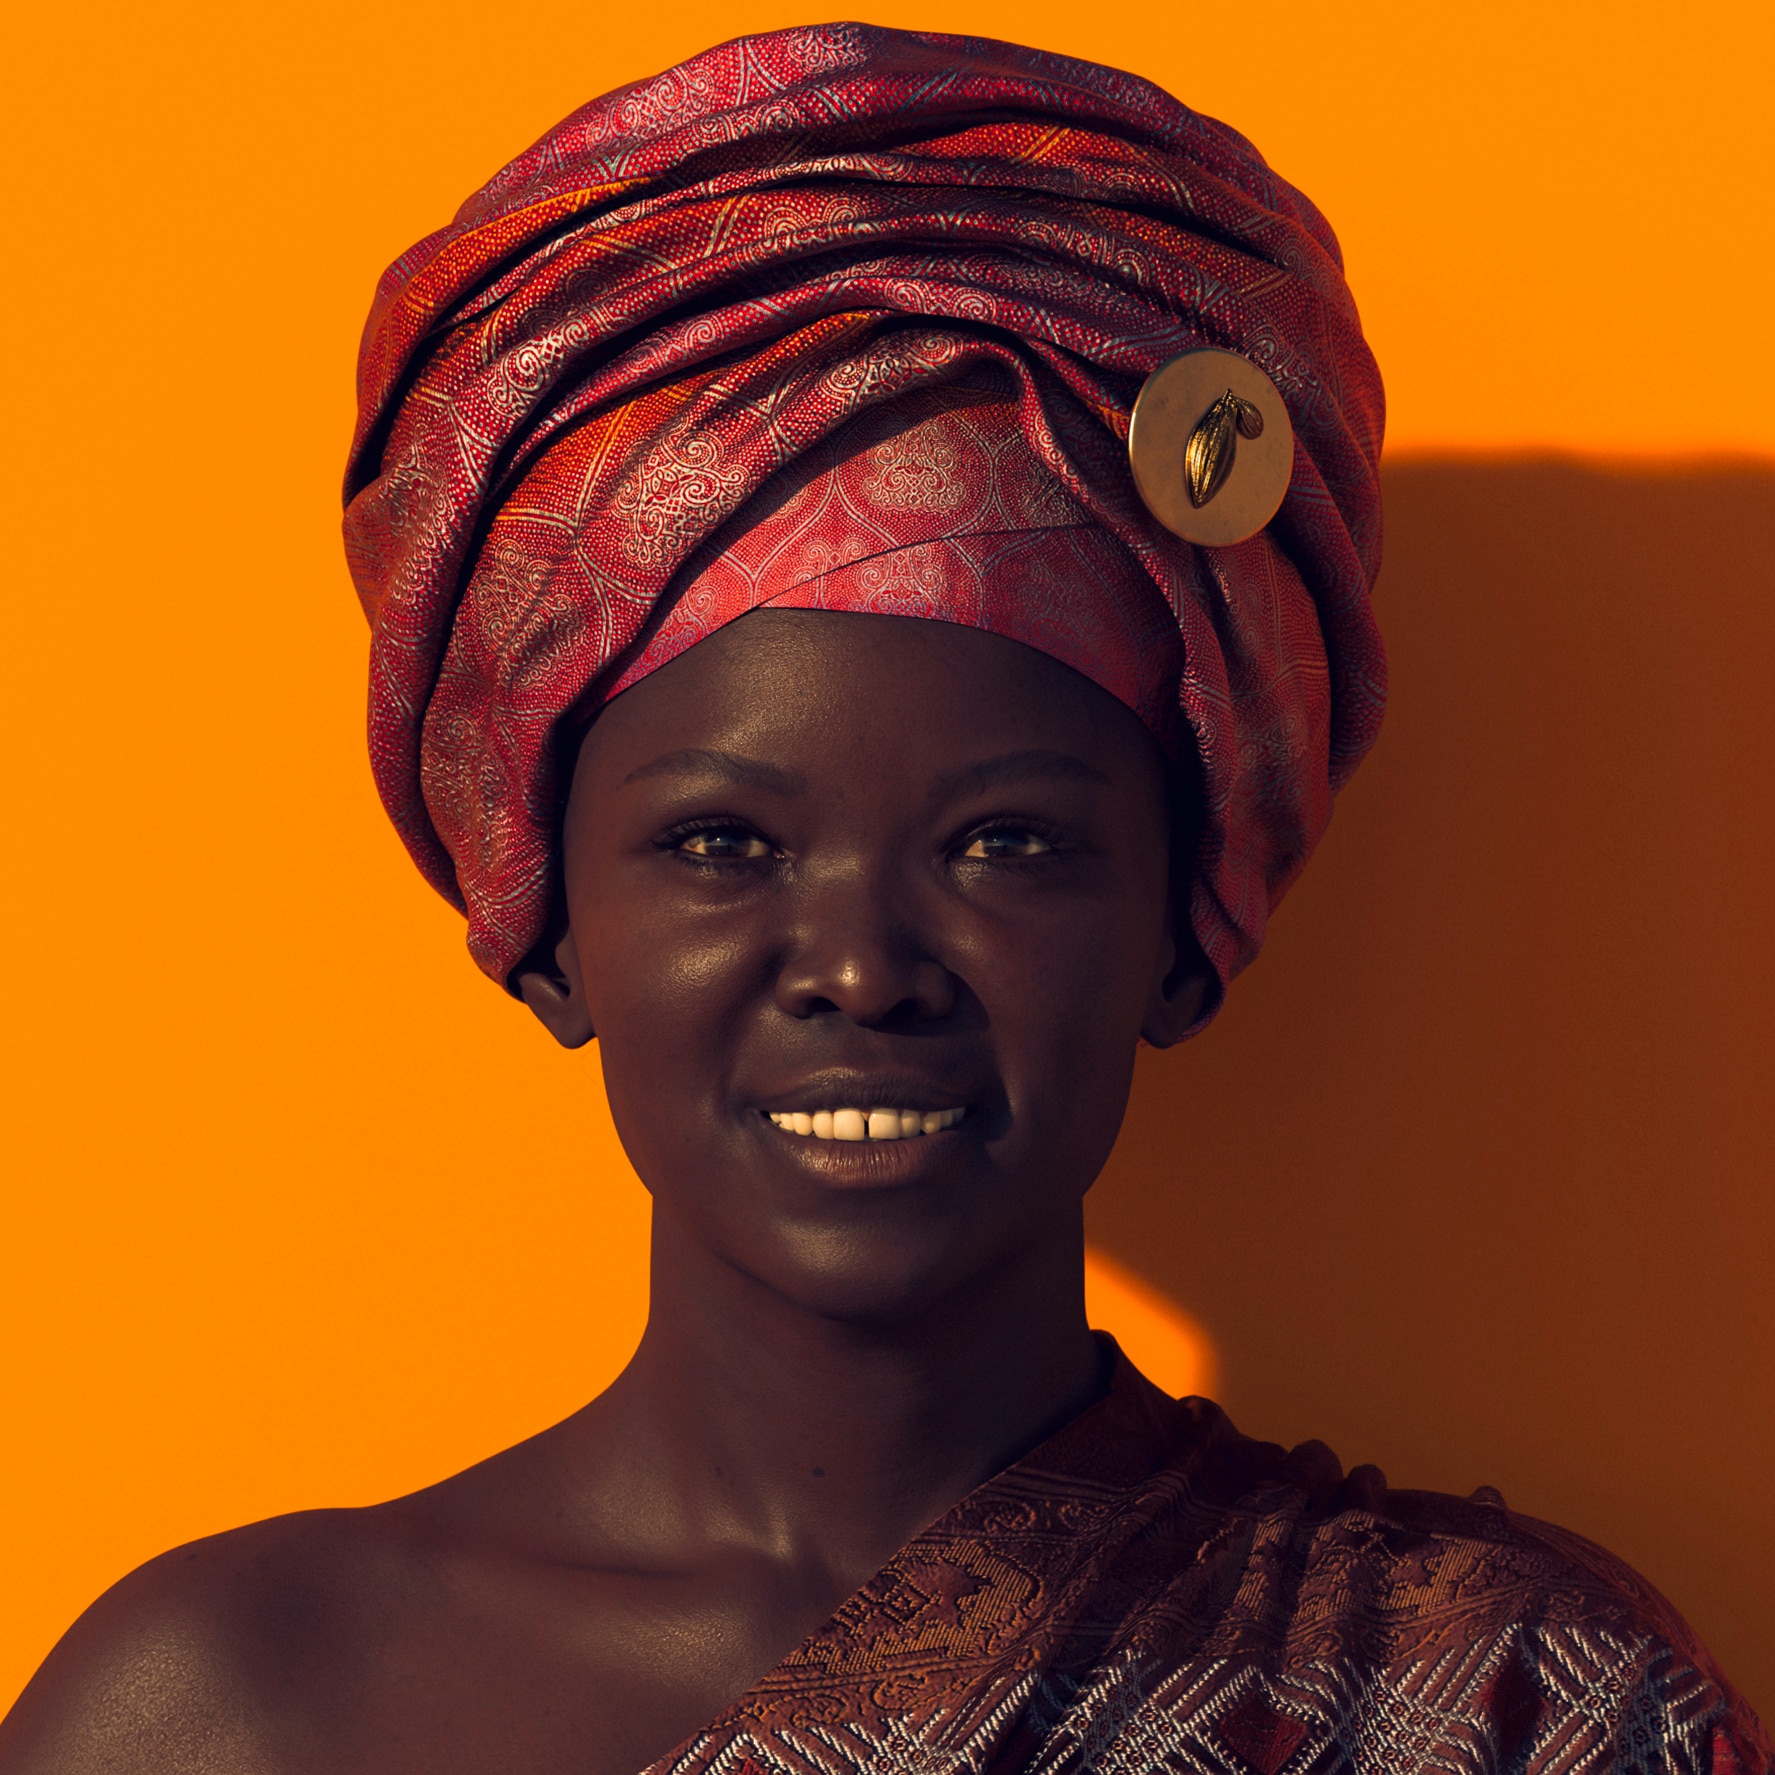 Porträt einer afrikanischen Frau, die ein grosses Tuch um den Kopf gewickelt hat, auf orangenem Hintergrund